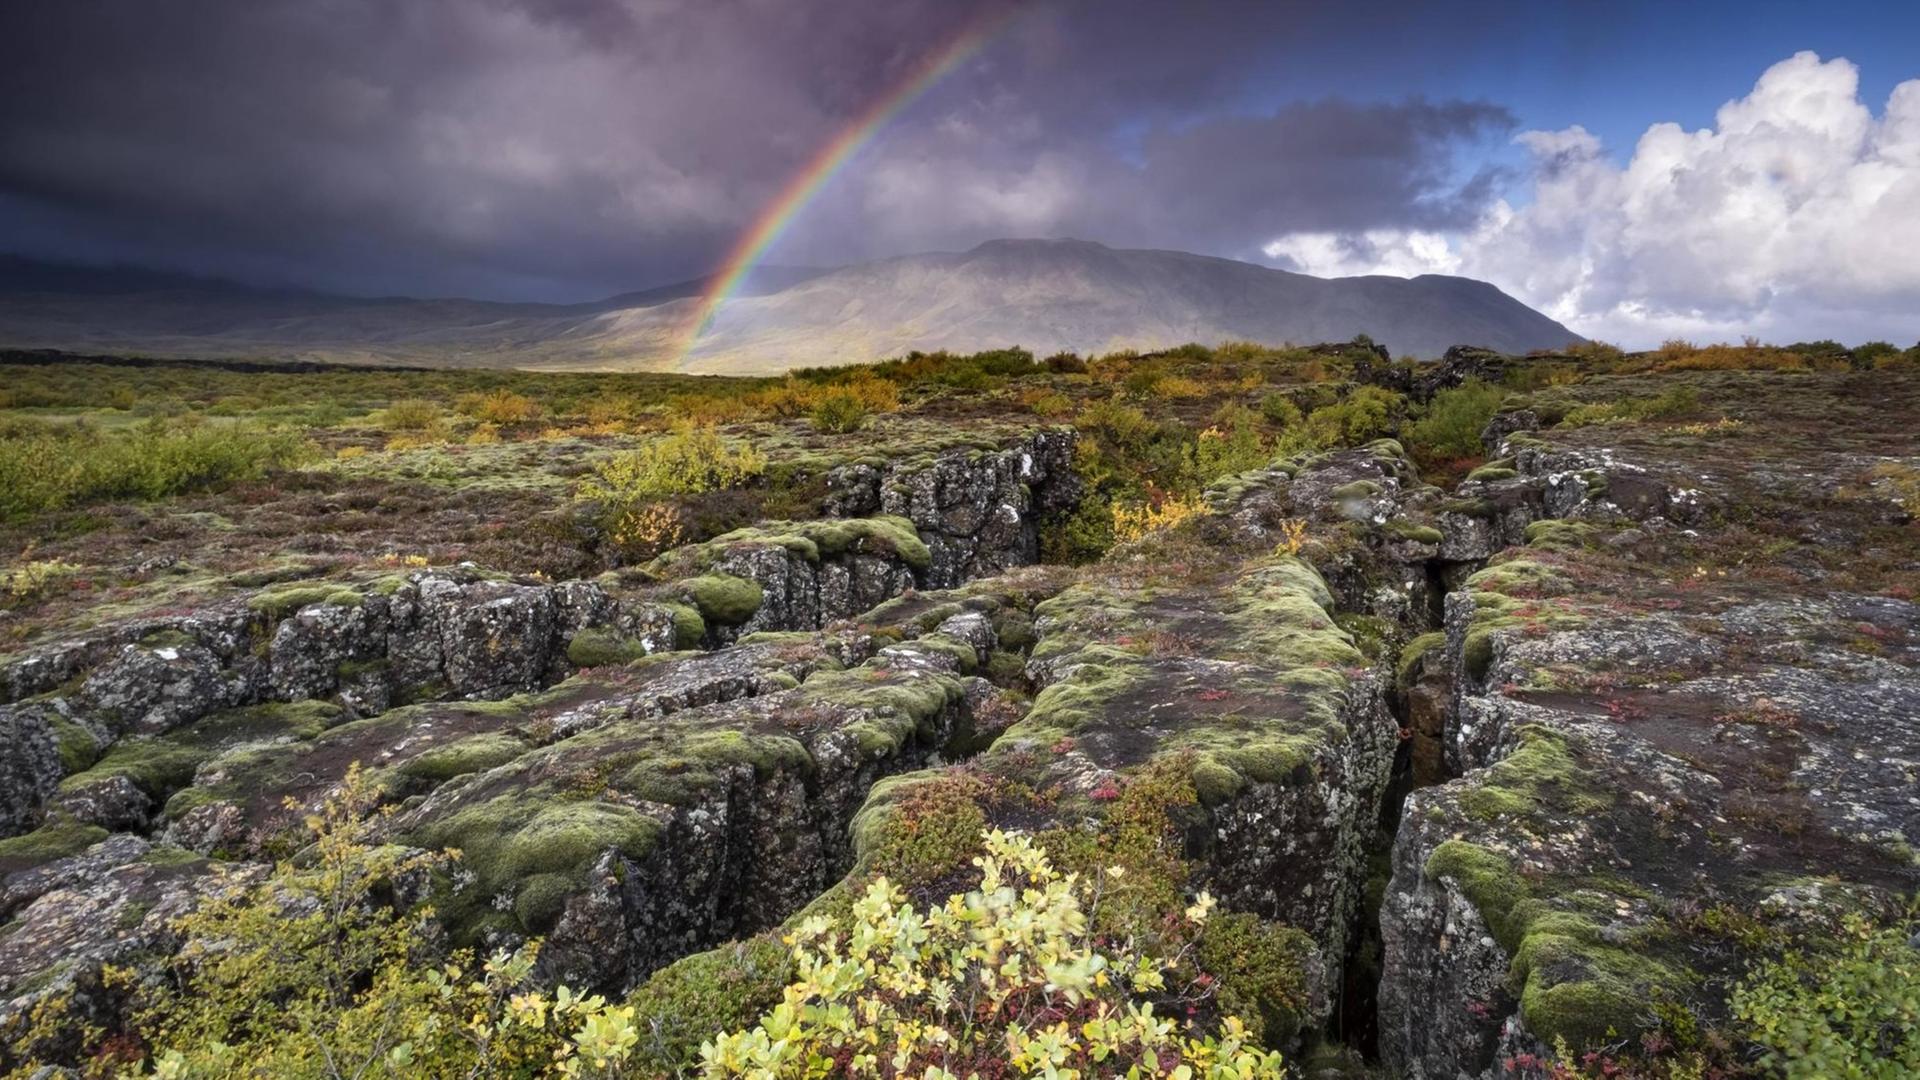 Regenbogen und Regenwolken über einer Vulkanlandschaft mit tektonischer Plattenfissur.